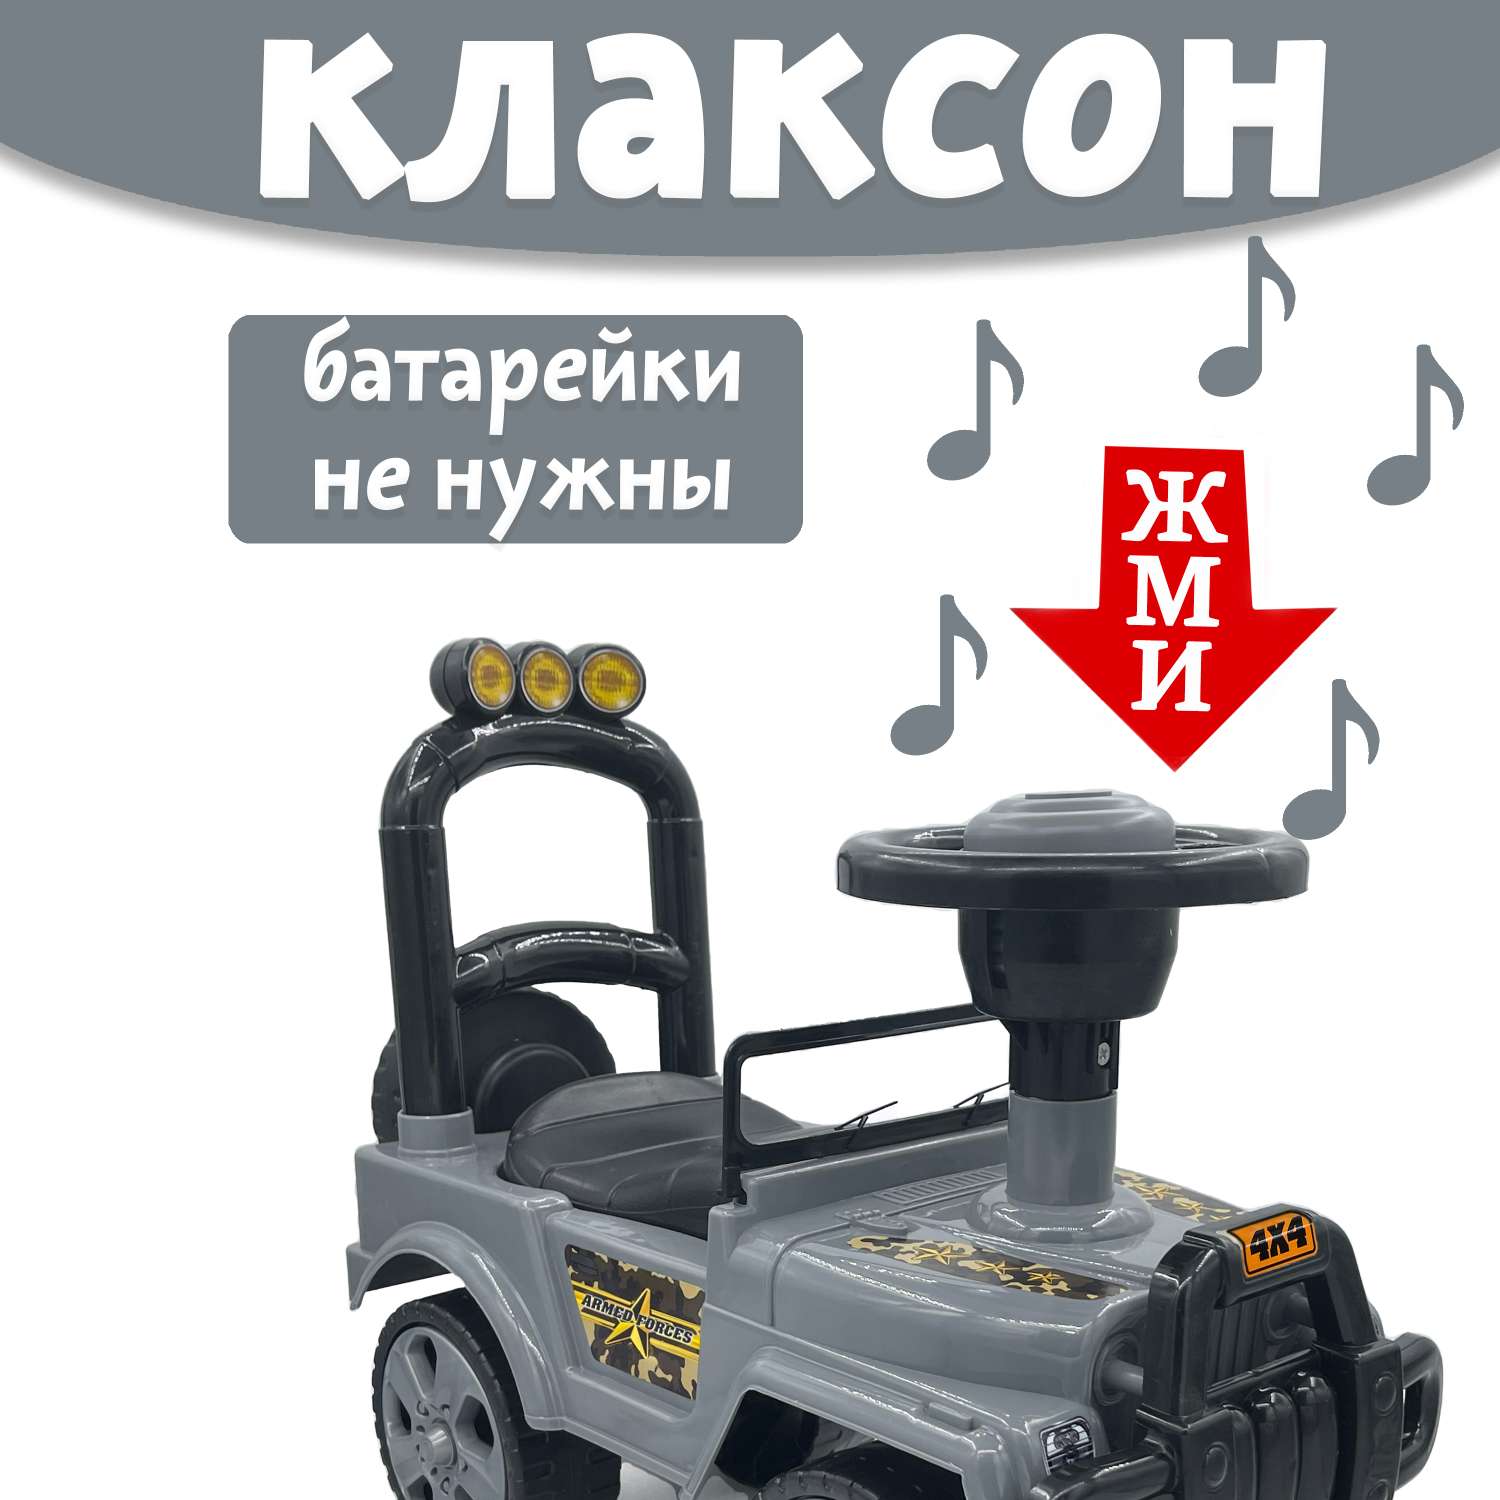 Машина каталка Нижегородская игрушка 135 Серая - фото 2